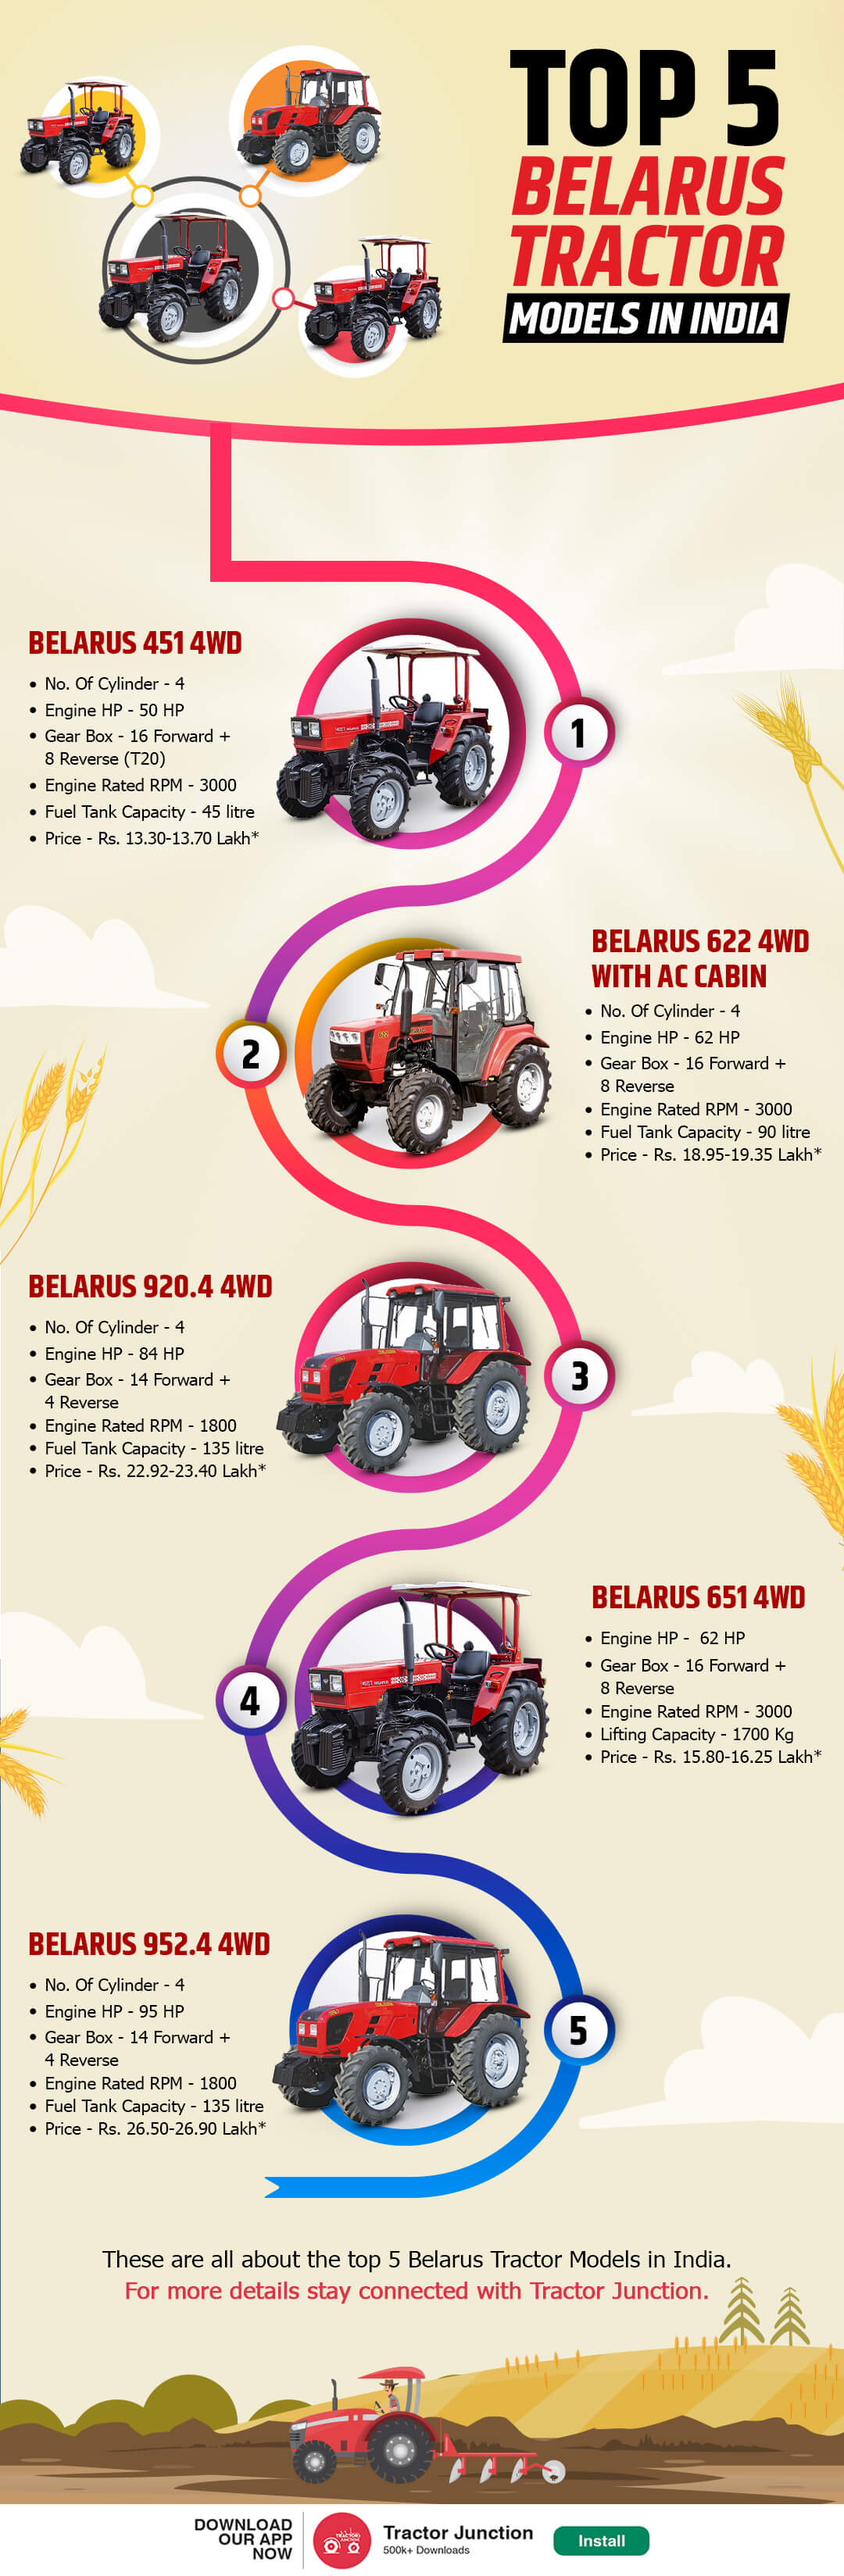 Top-5-Belarus Tractor Models-Infographic